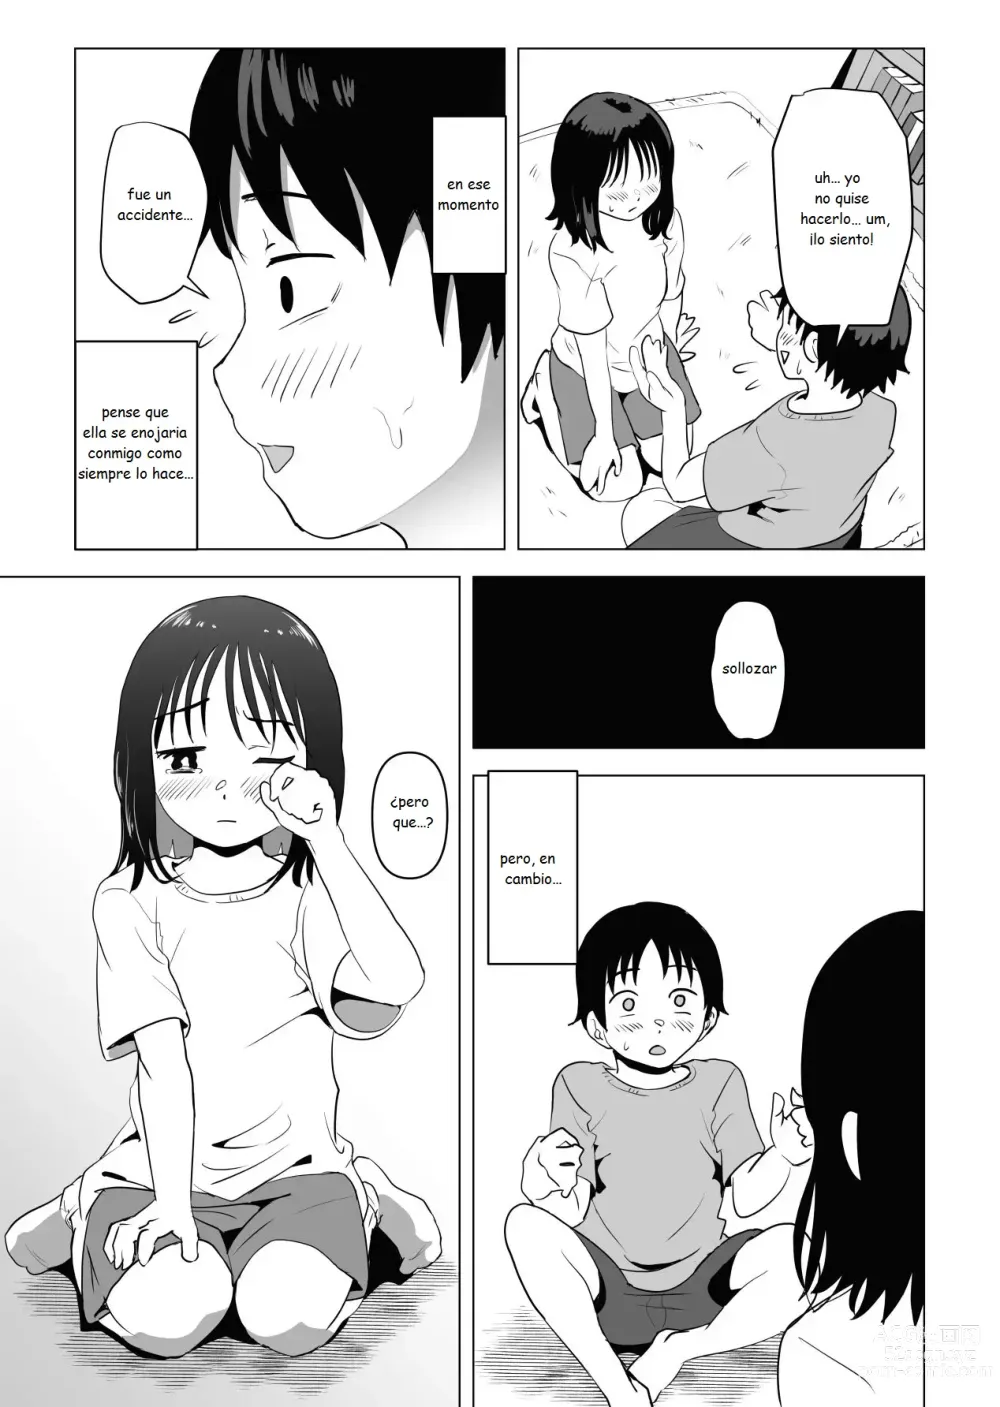 Page 6 of doujinshi Mi amiga de la infancia de grandes pechos y mi hermano se han estado conportado raro ultimamente